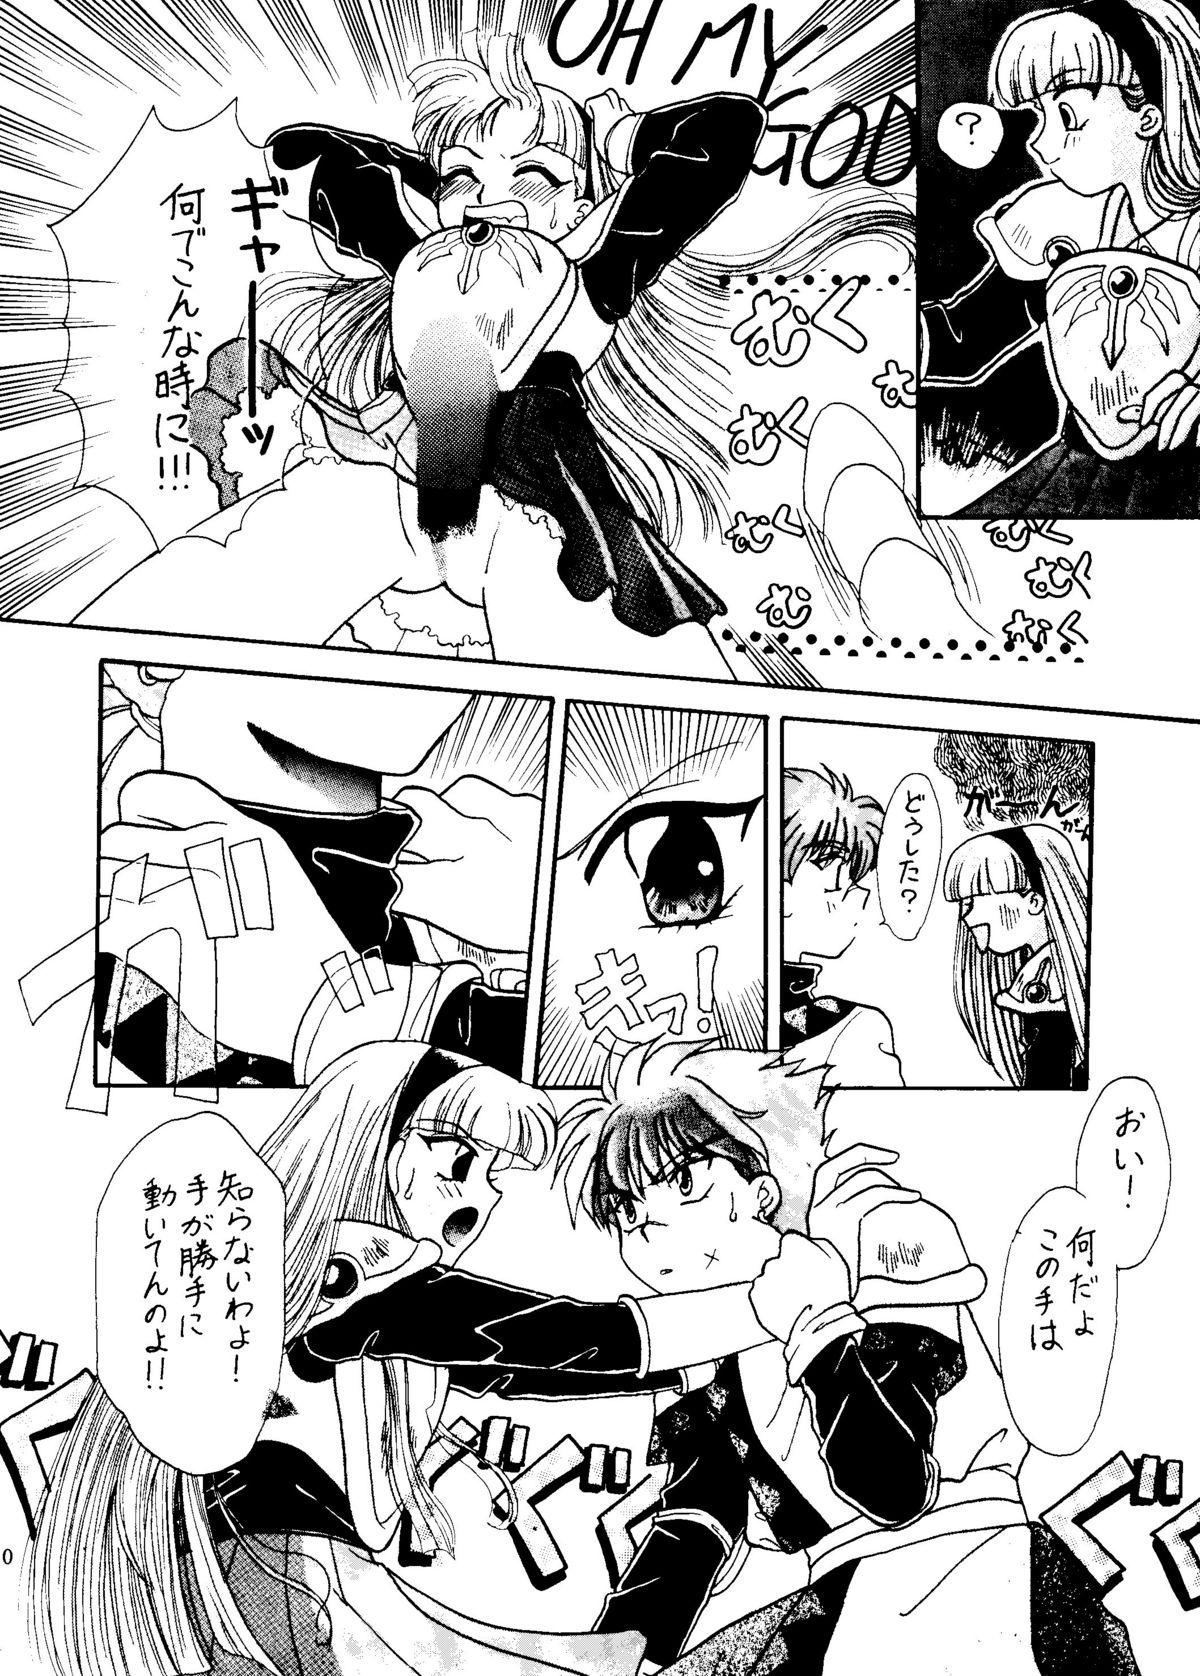 Daddy Sekai Seifuku Sailorfuku 6 - Magic knight rayearth Akazukin cha cha Macross 7 Old Young - Page 12